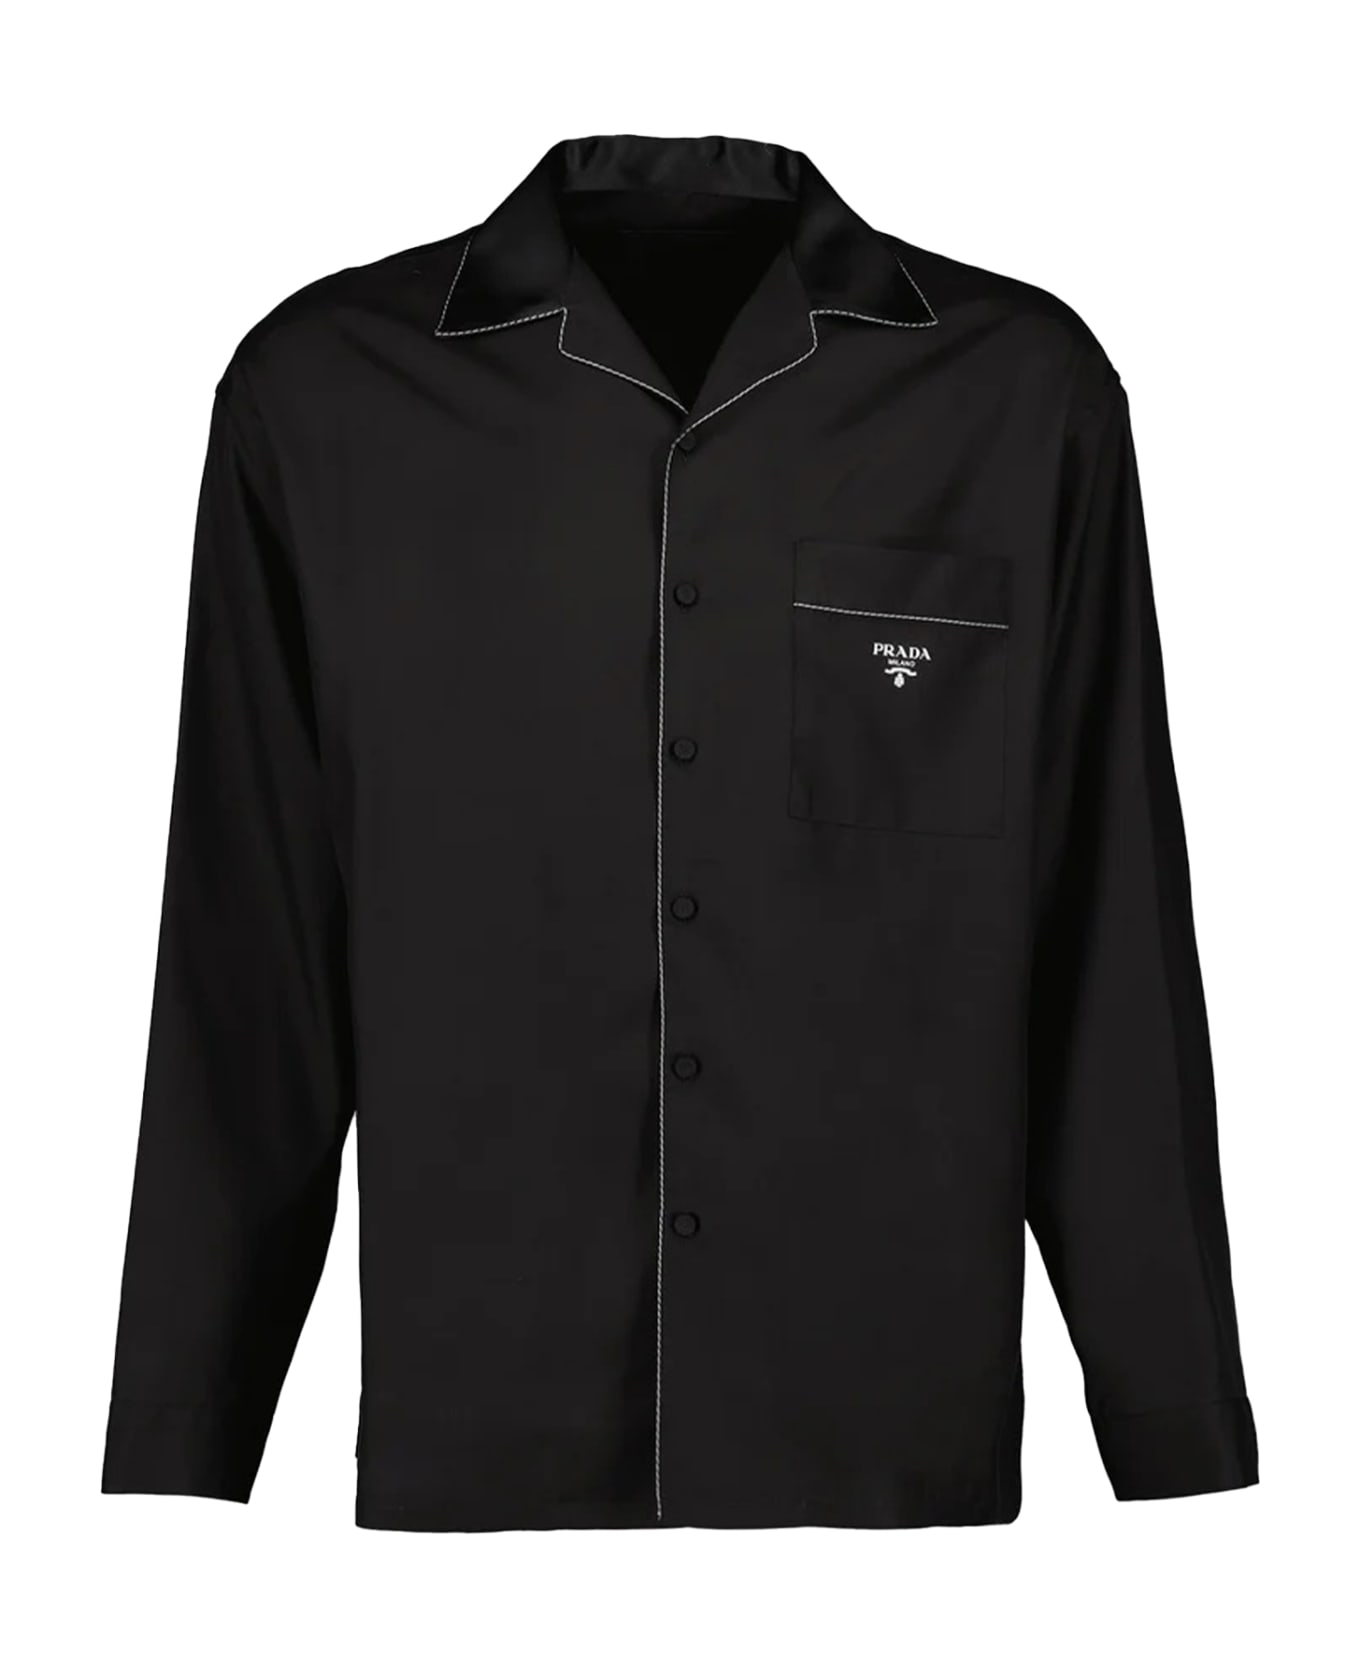 Prada Black Shirt With Logo - BLUE